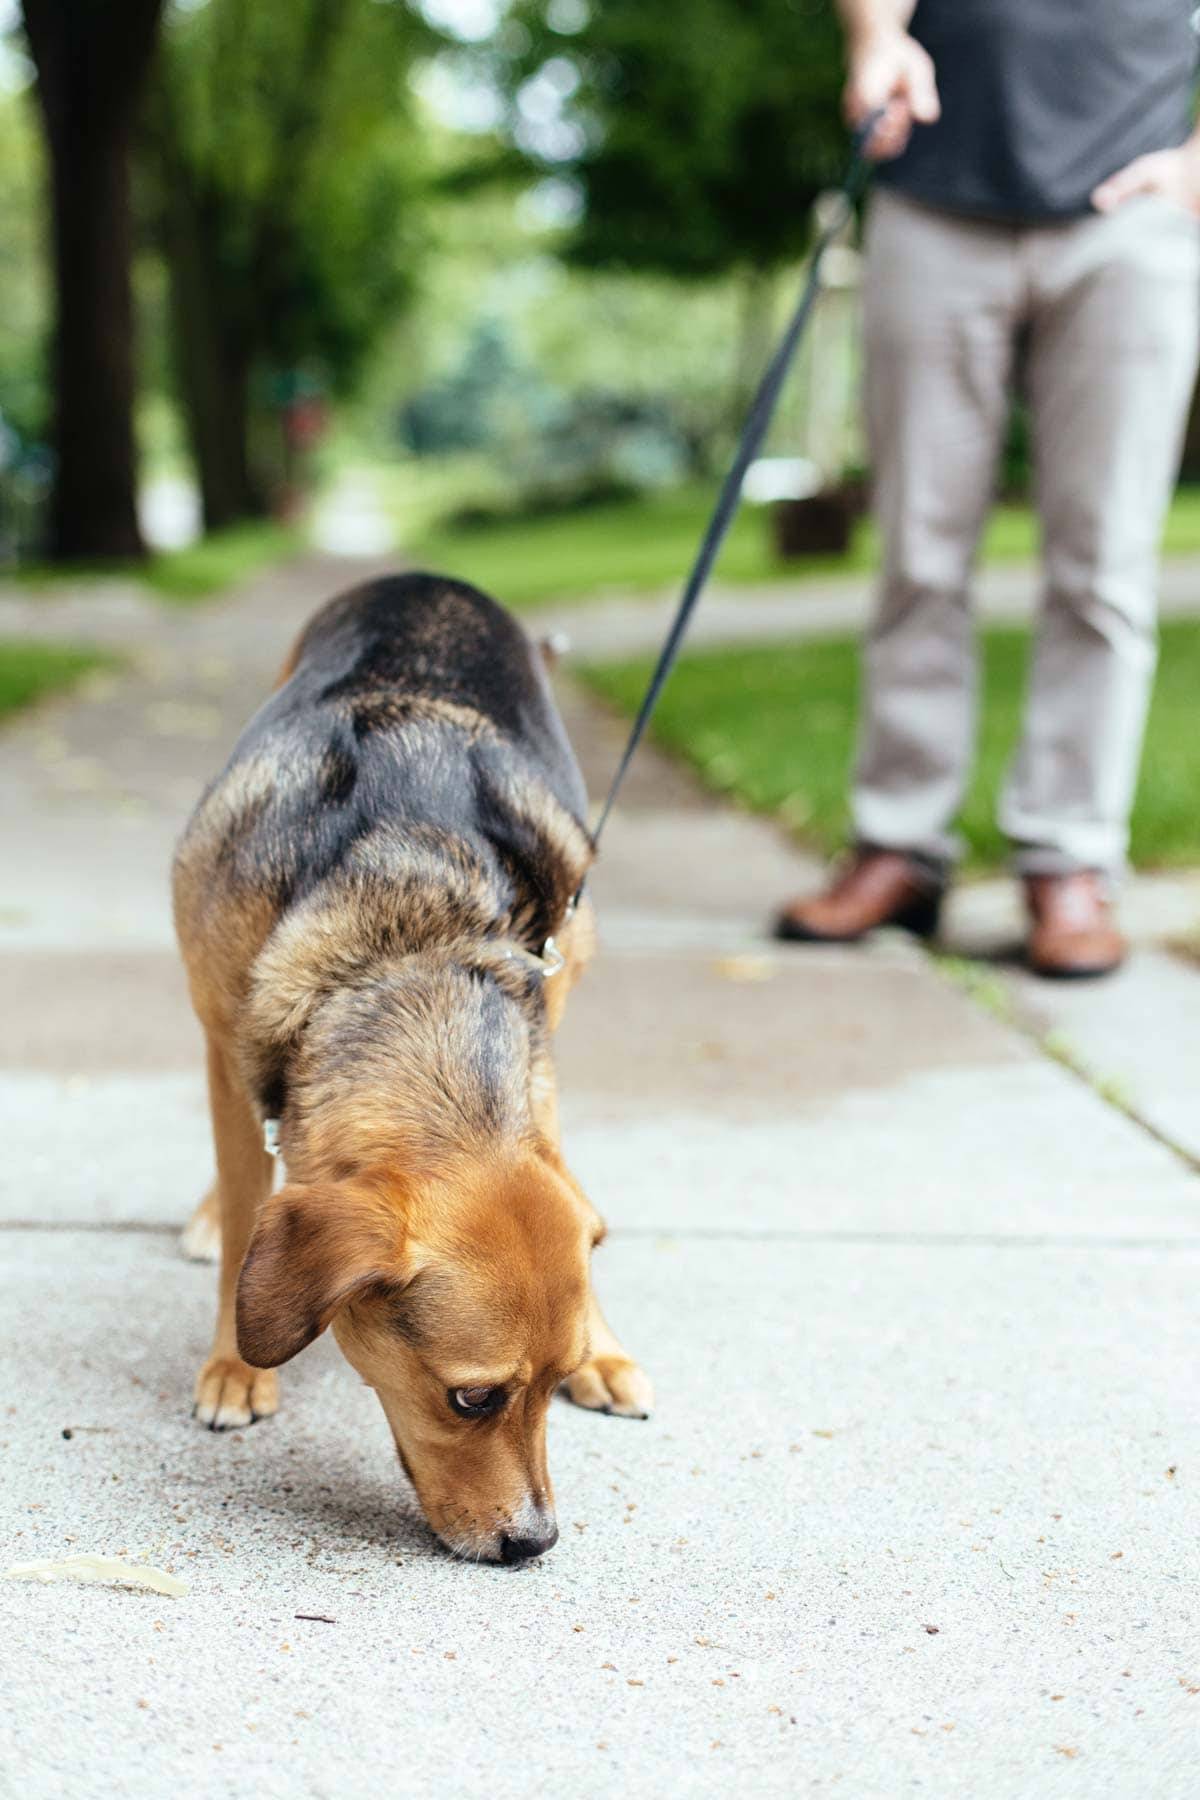 Dog walking on a sidewalk.